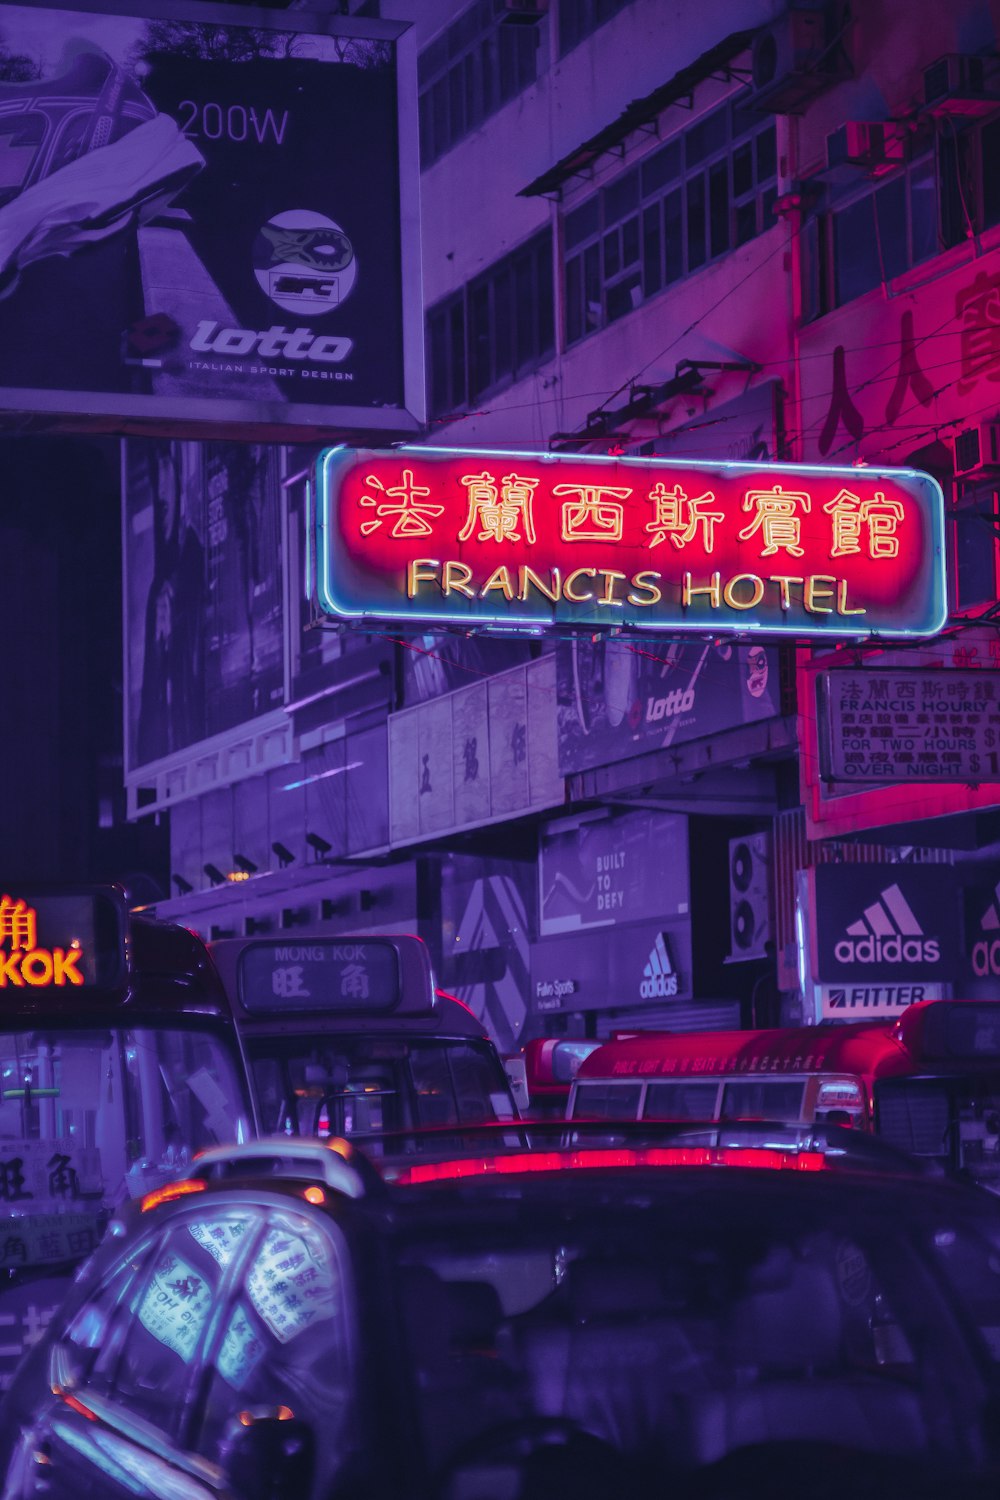 Francis Hotel signage